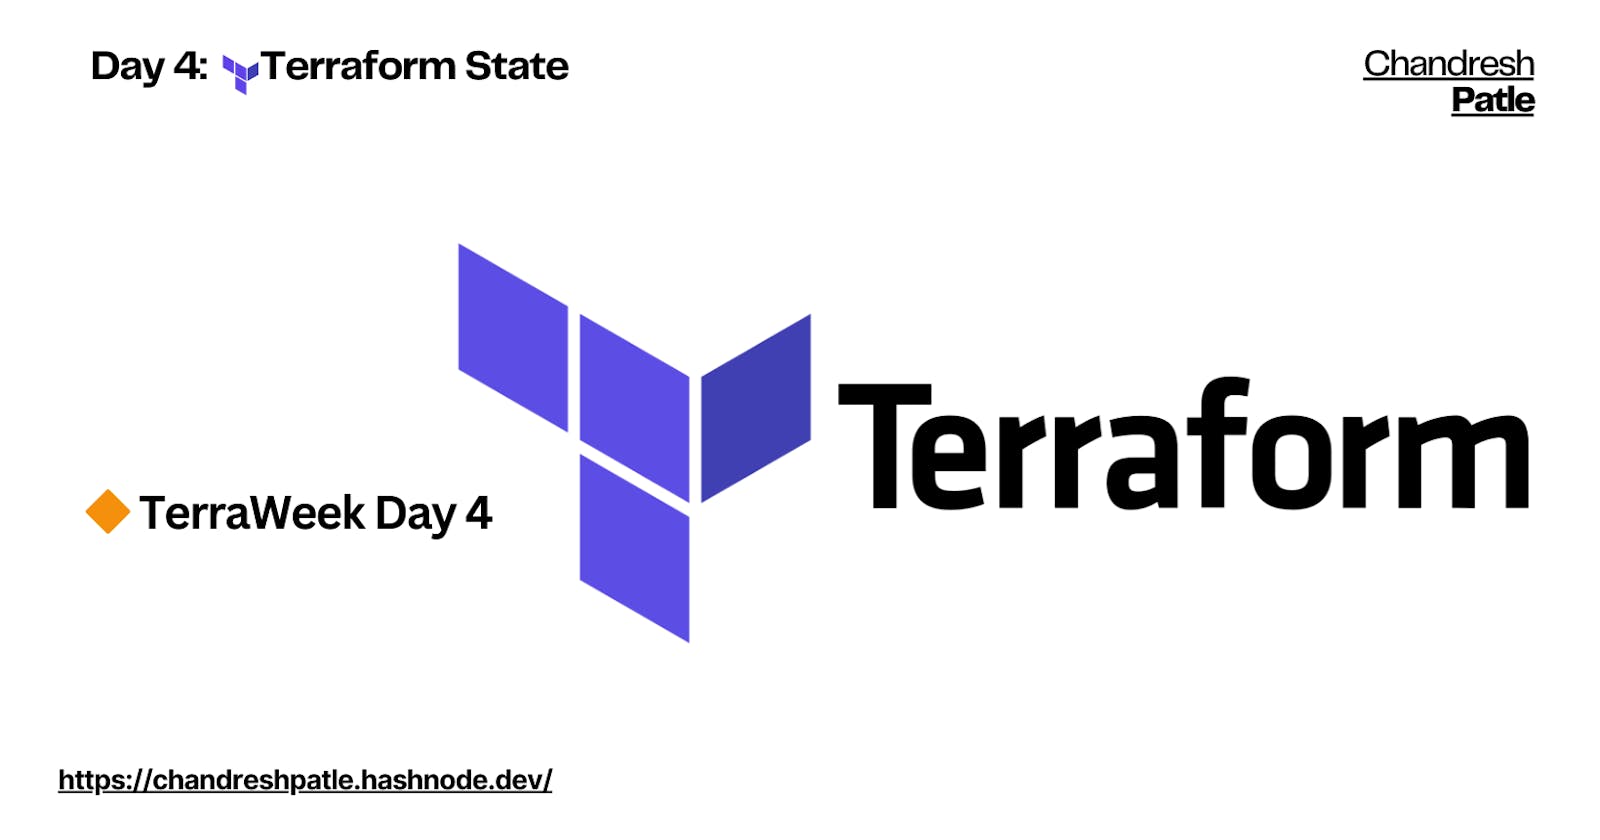 Day 4: Terraform State